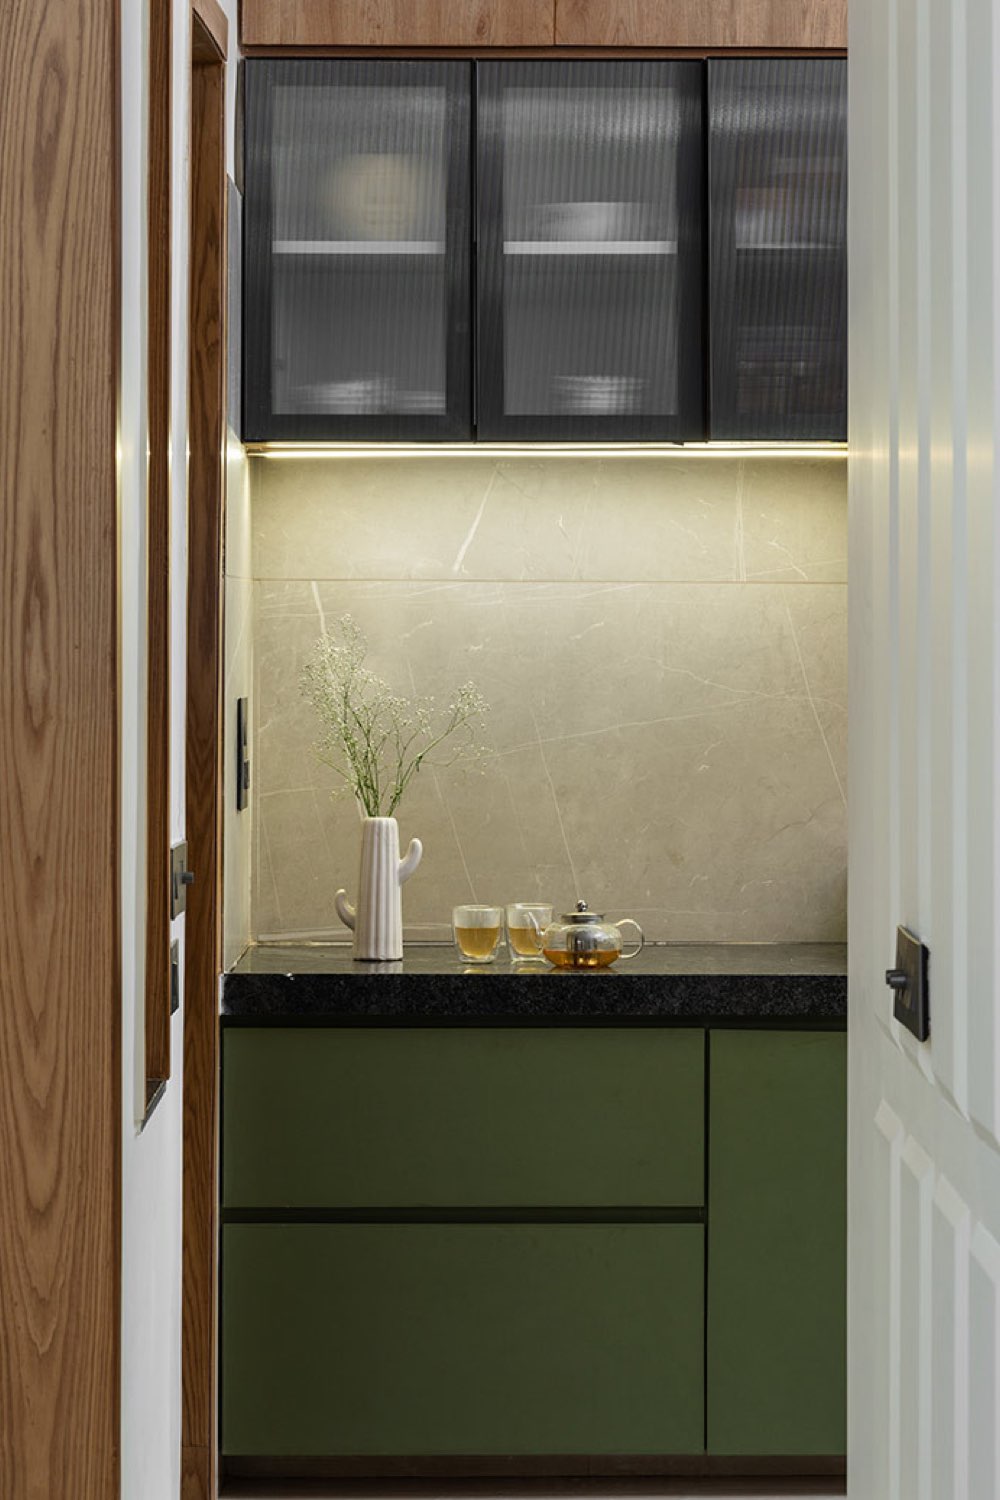 appartement lumineux moderne decor nature cuisine mobilier vert noir verre crédence carrelage minéral